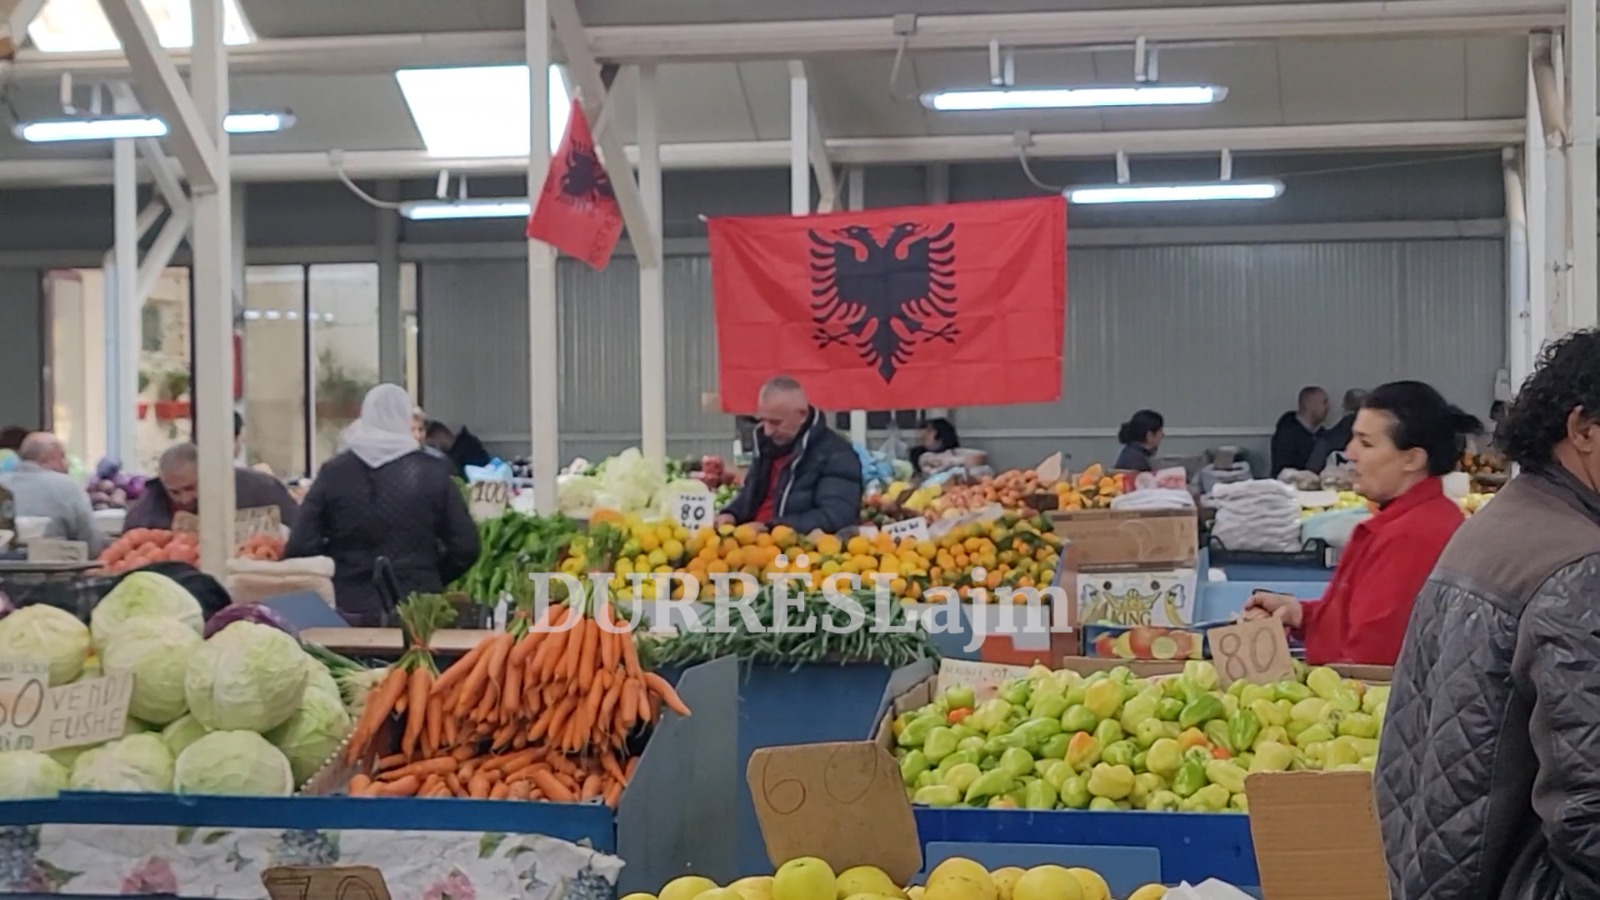 Durrës, nuk ka patriotizëm me barkun bosh. Tregtarët:  Si mos më keq, po rrimë në punë sa për të thënë! (VIDEO)